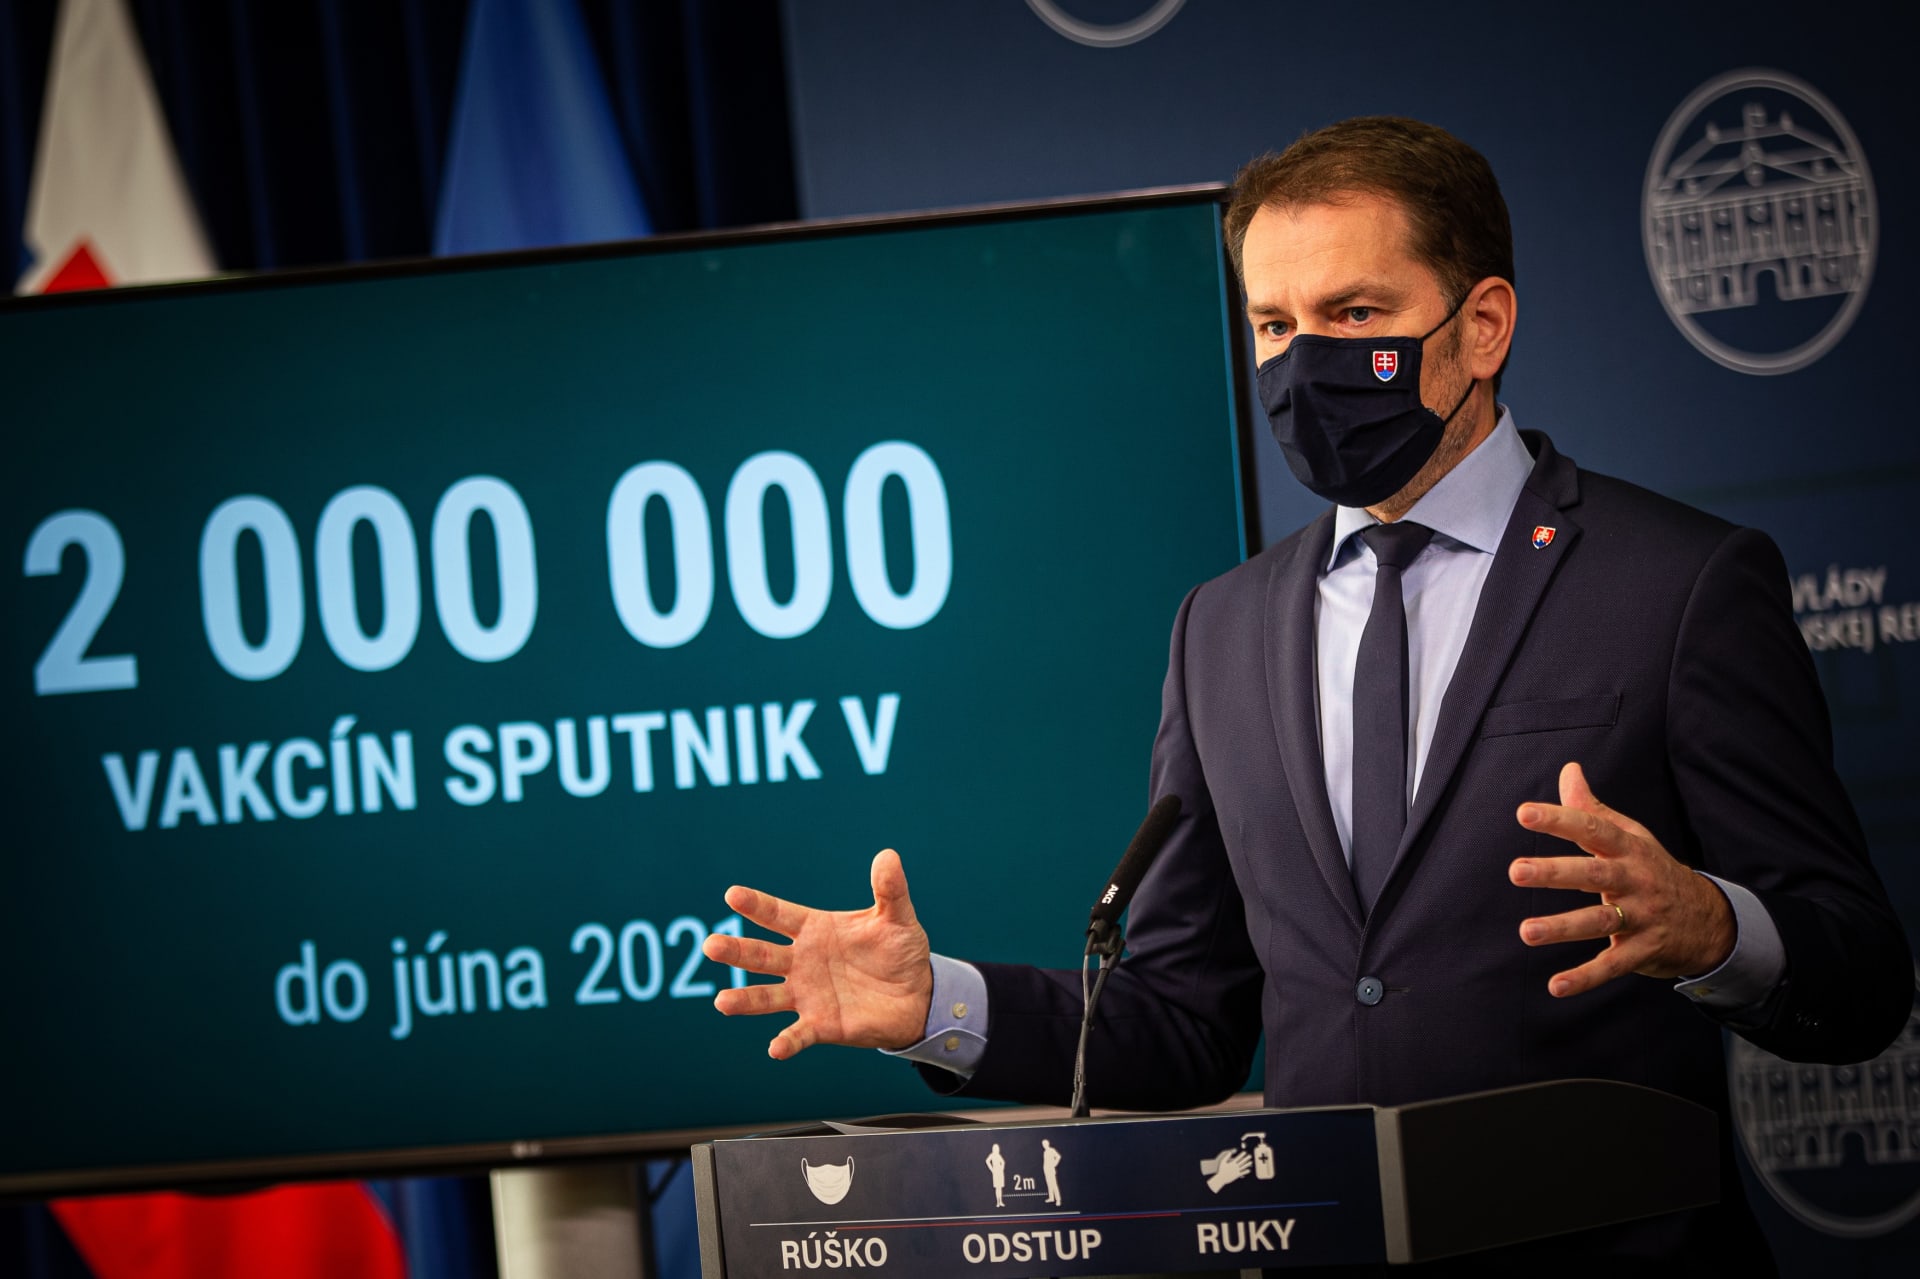 Slovenský premiér Igor Matovič pro svoji zemi vyjednal zásilku ruské vakcíny Sputnik V. Tento krok jej však může vyjít draho. Kritizuje ho nejen část obyvatel, ale i vládní koalice.